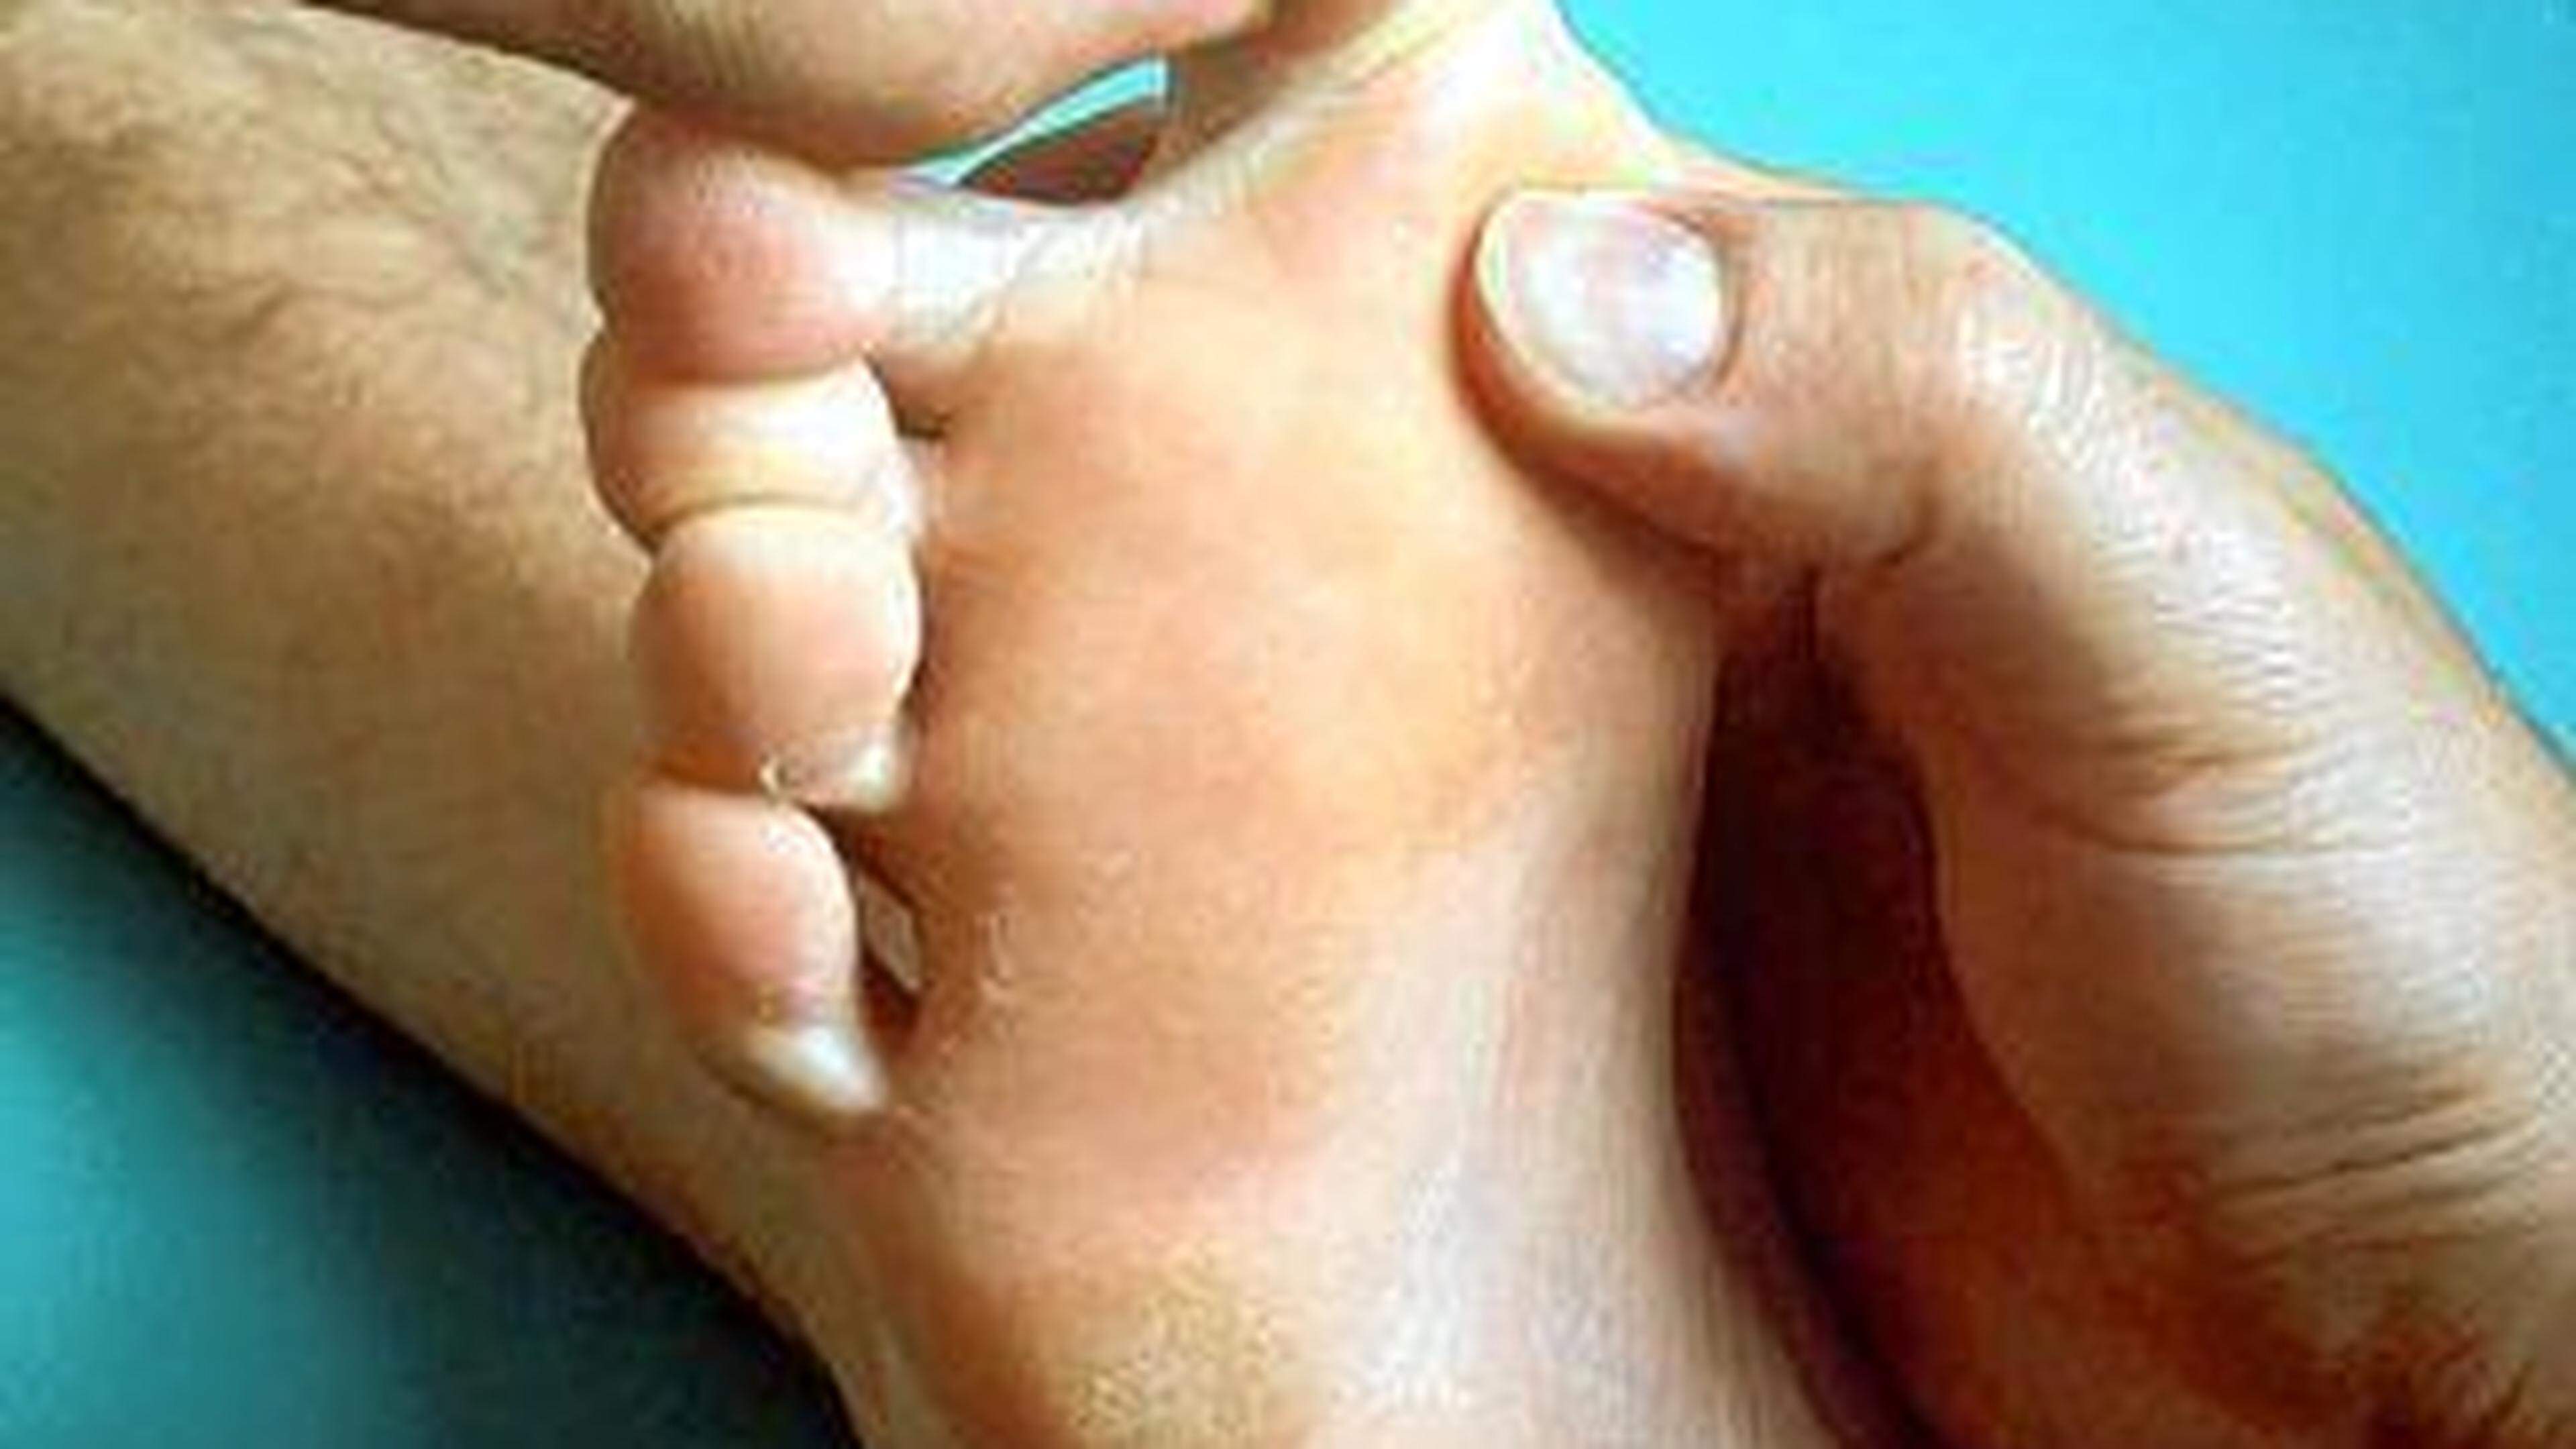 Schon vor etwa 5.000 Jahren entwickelte sich in der traditionellen chinesischen Medizin die Idee, dass jedes Organ und jeder Teil des Körpers einem bestimmten Bereich auf der Fußsohle zuzuordnen ist. So entstand die Fußreflexzonentherapie.